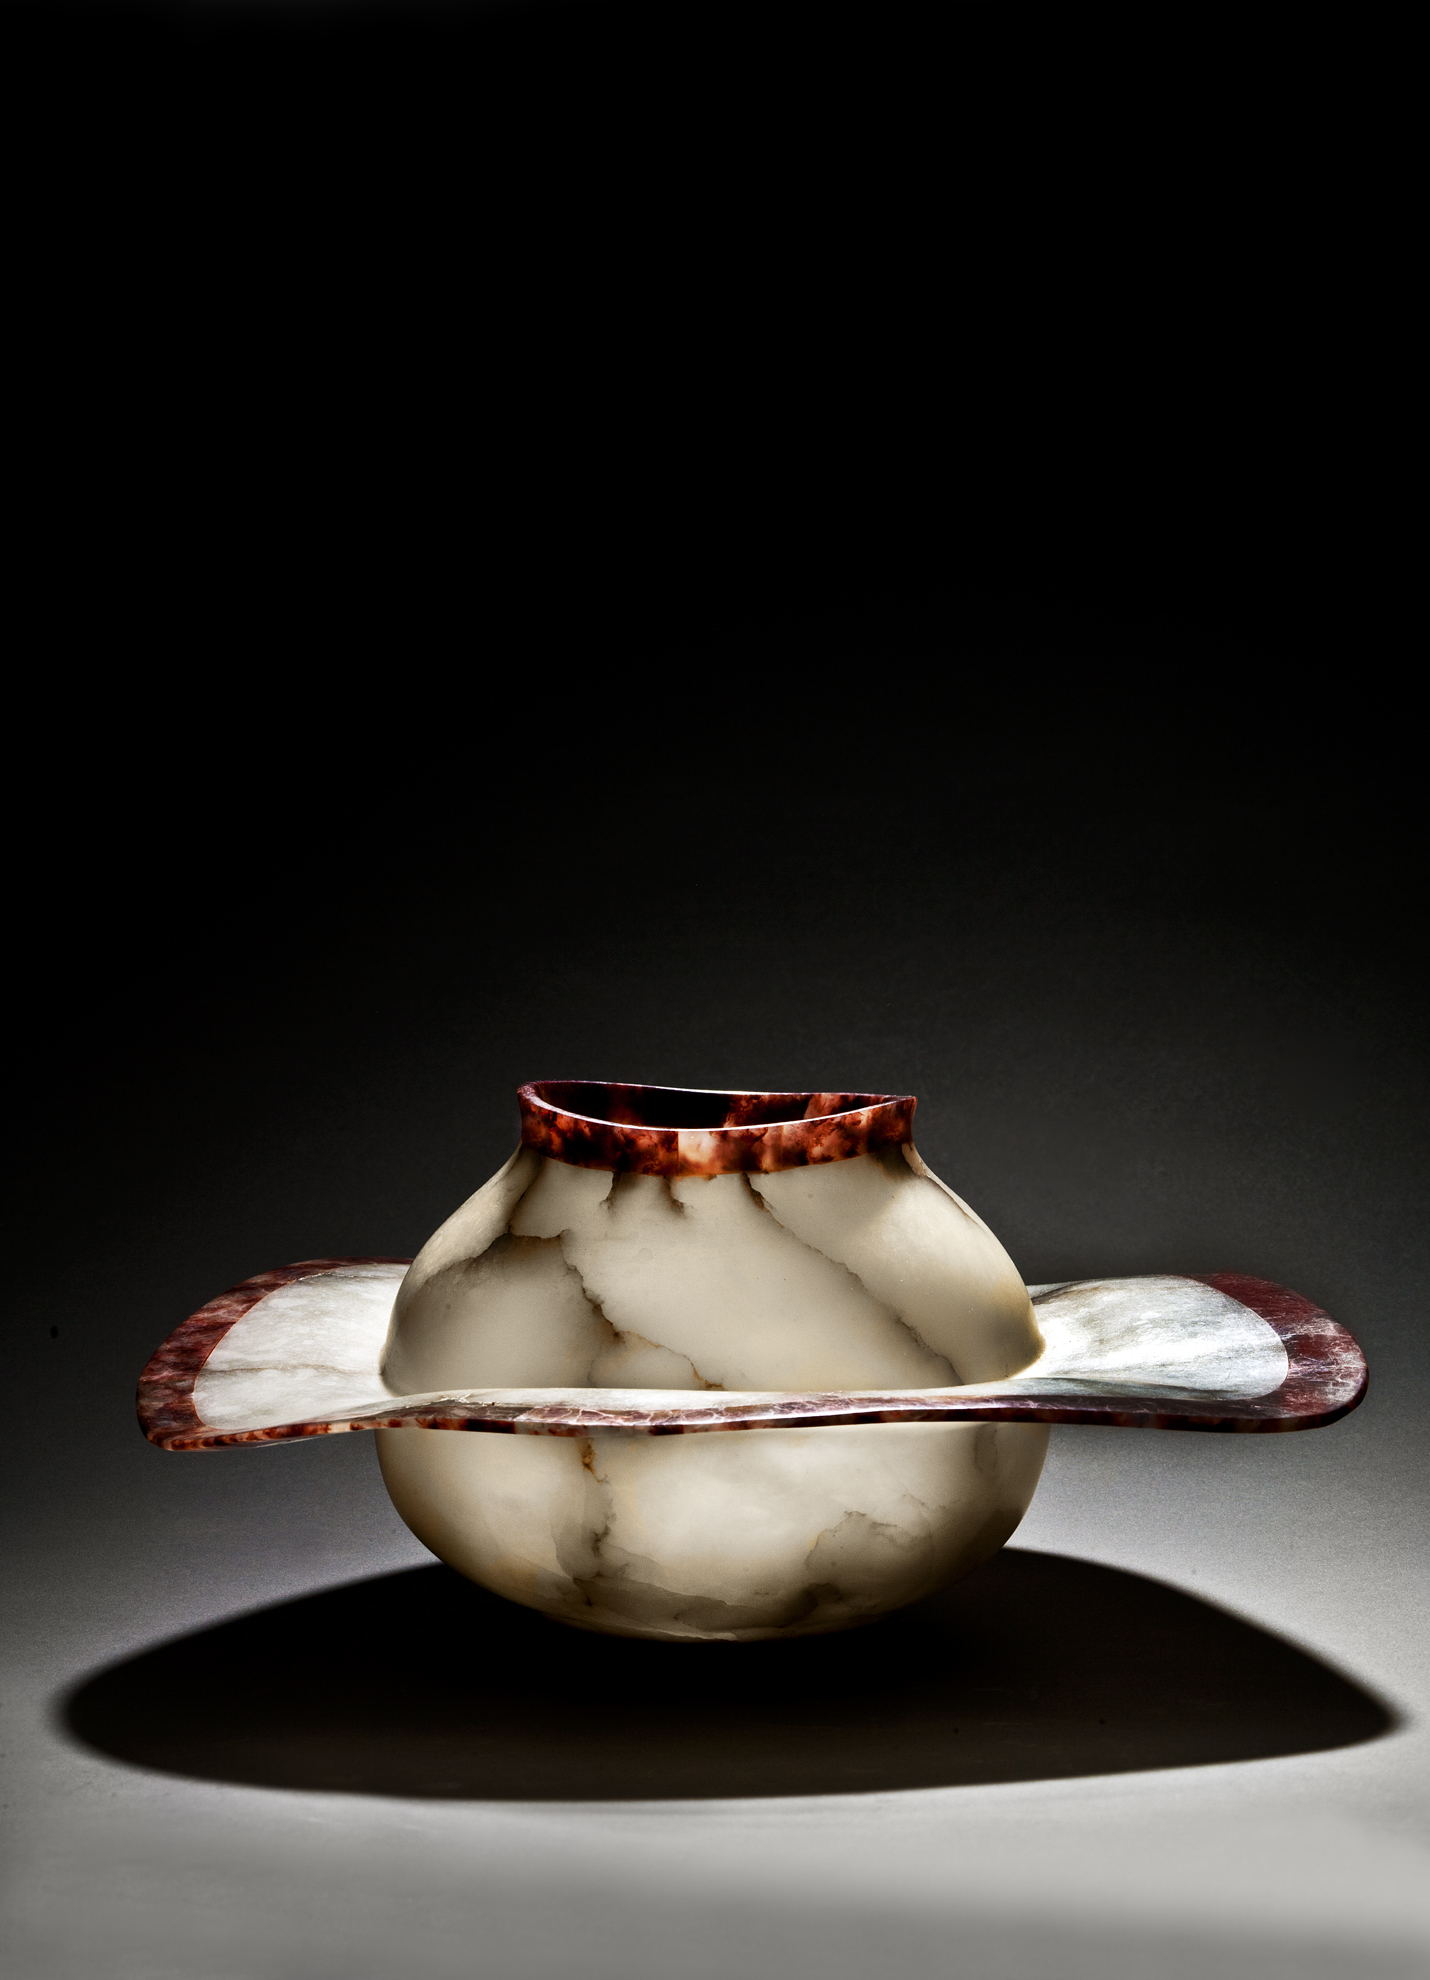 Flying Bowl by Susan Zalkind, 2015